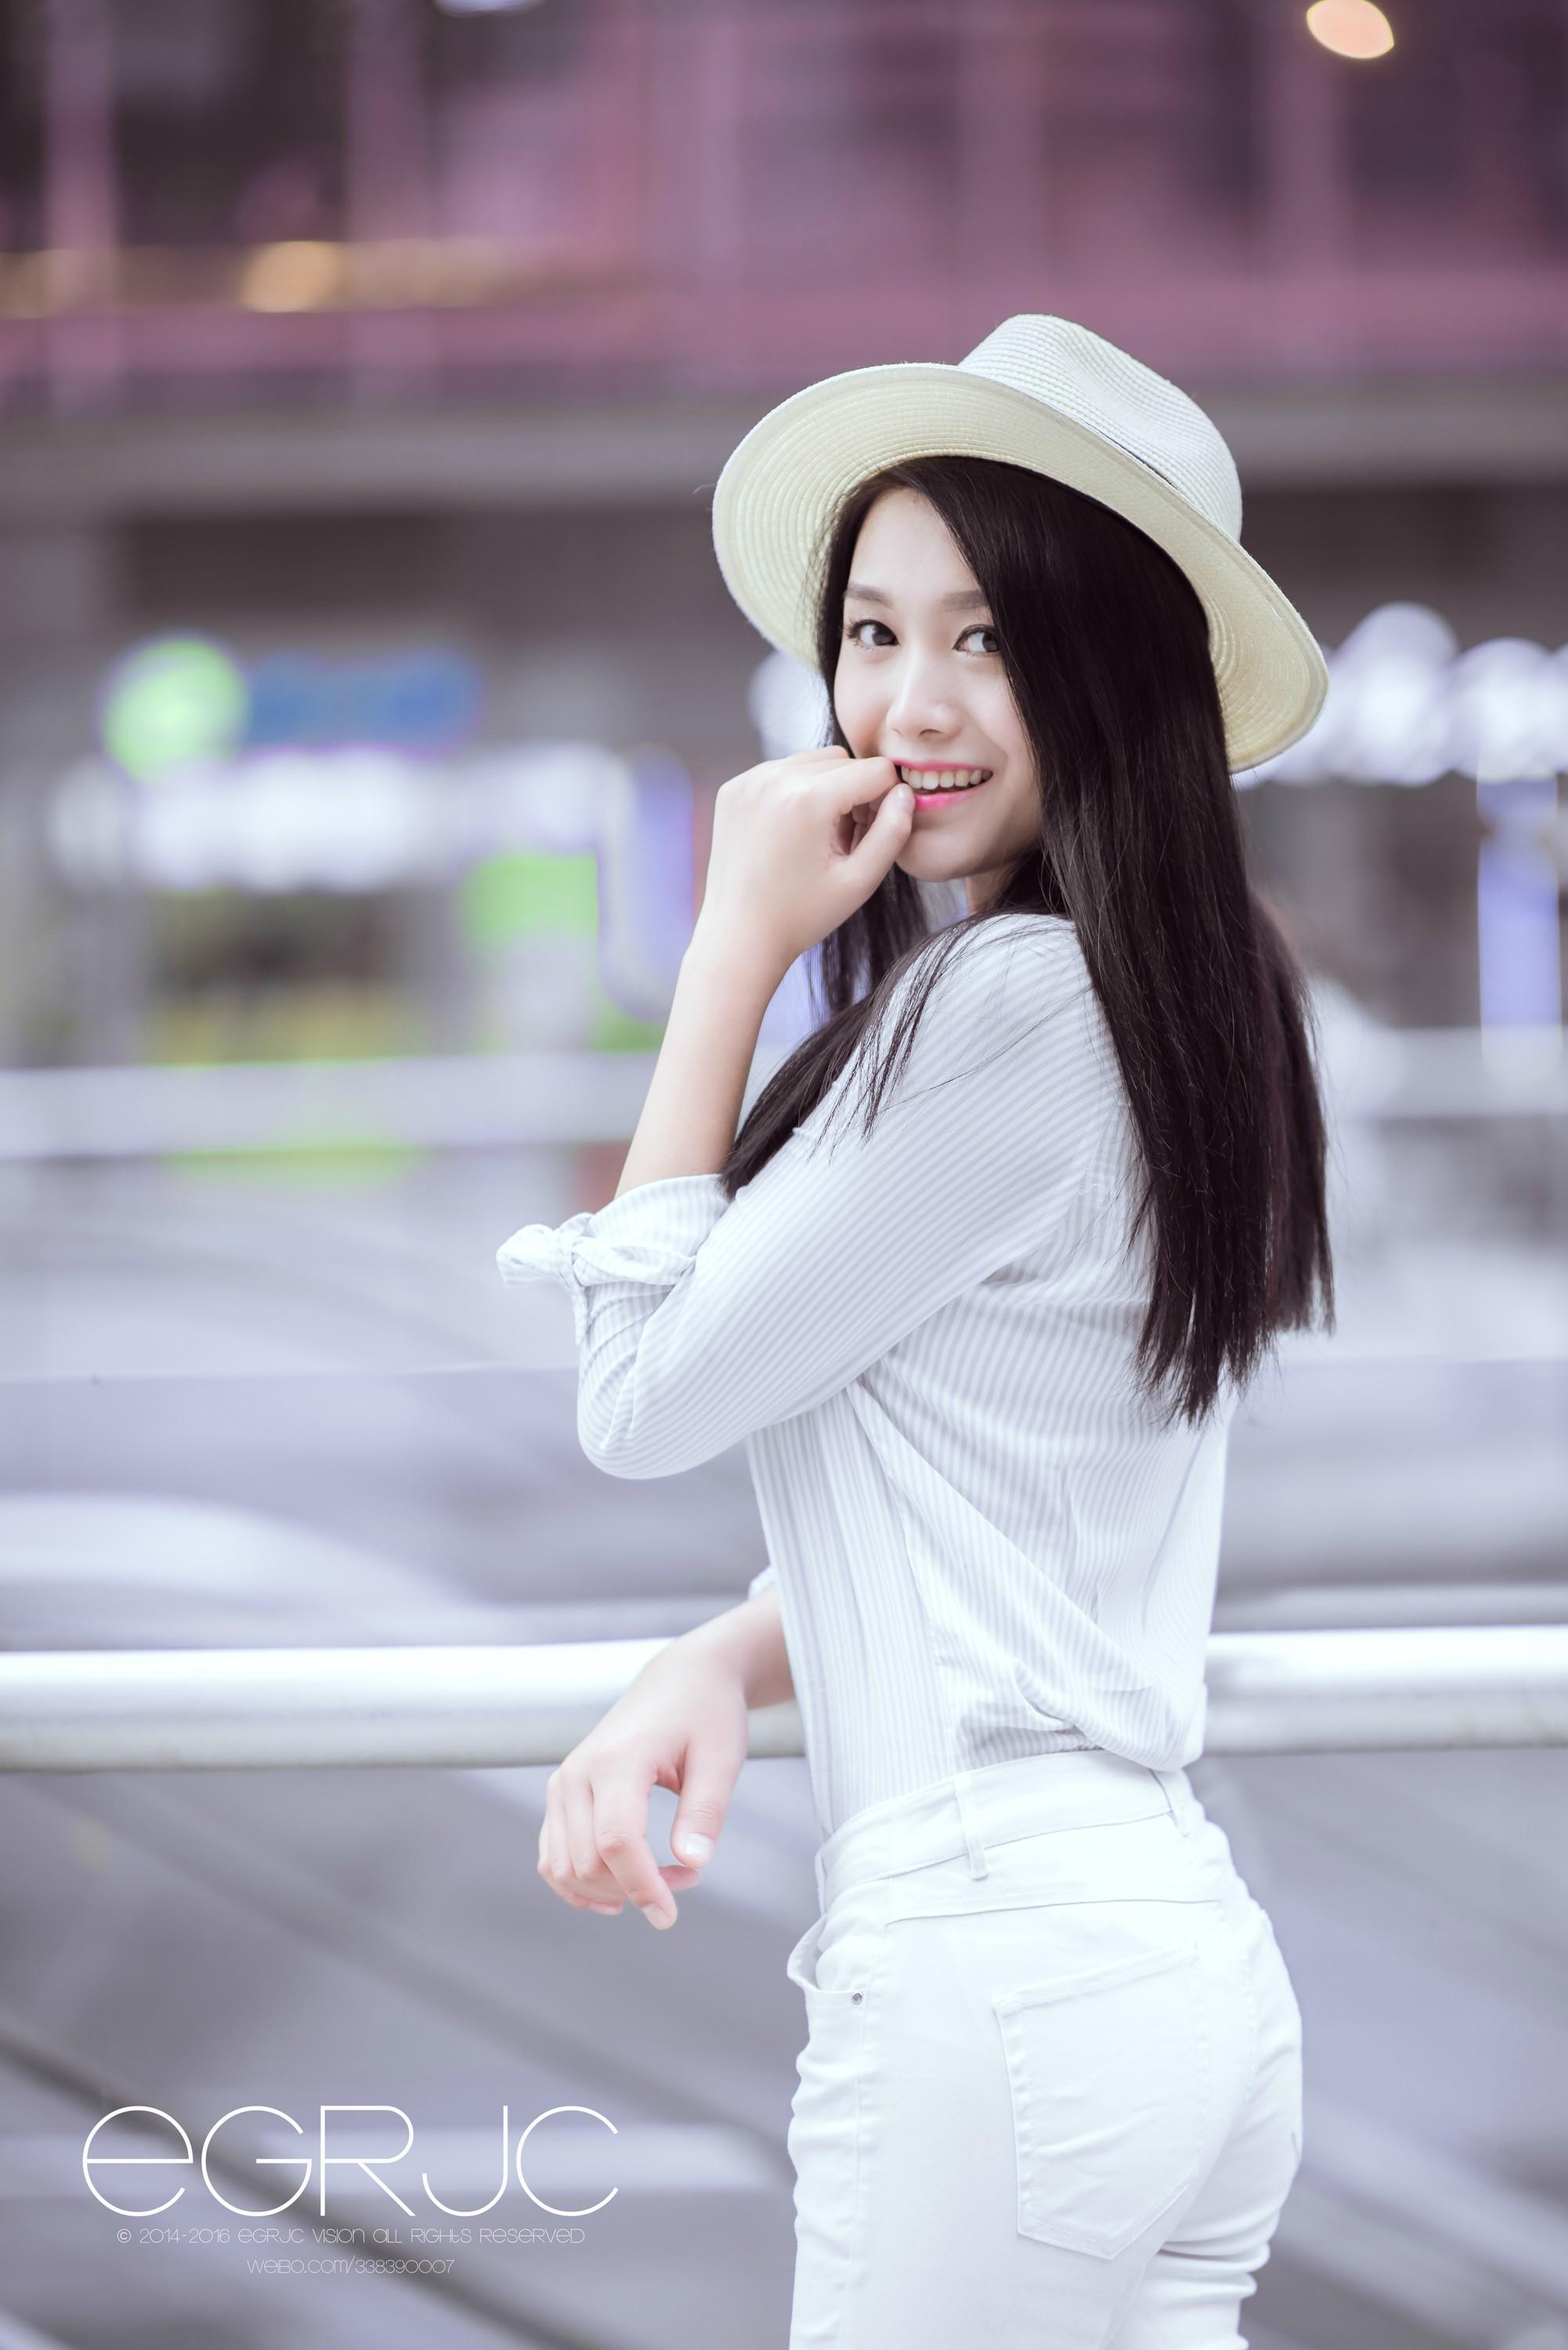 微博女神范 清新软妹纸 重庆模特「街拍 - 若晴」 出镜：@ambersky1008 白色衬衫与长裤,